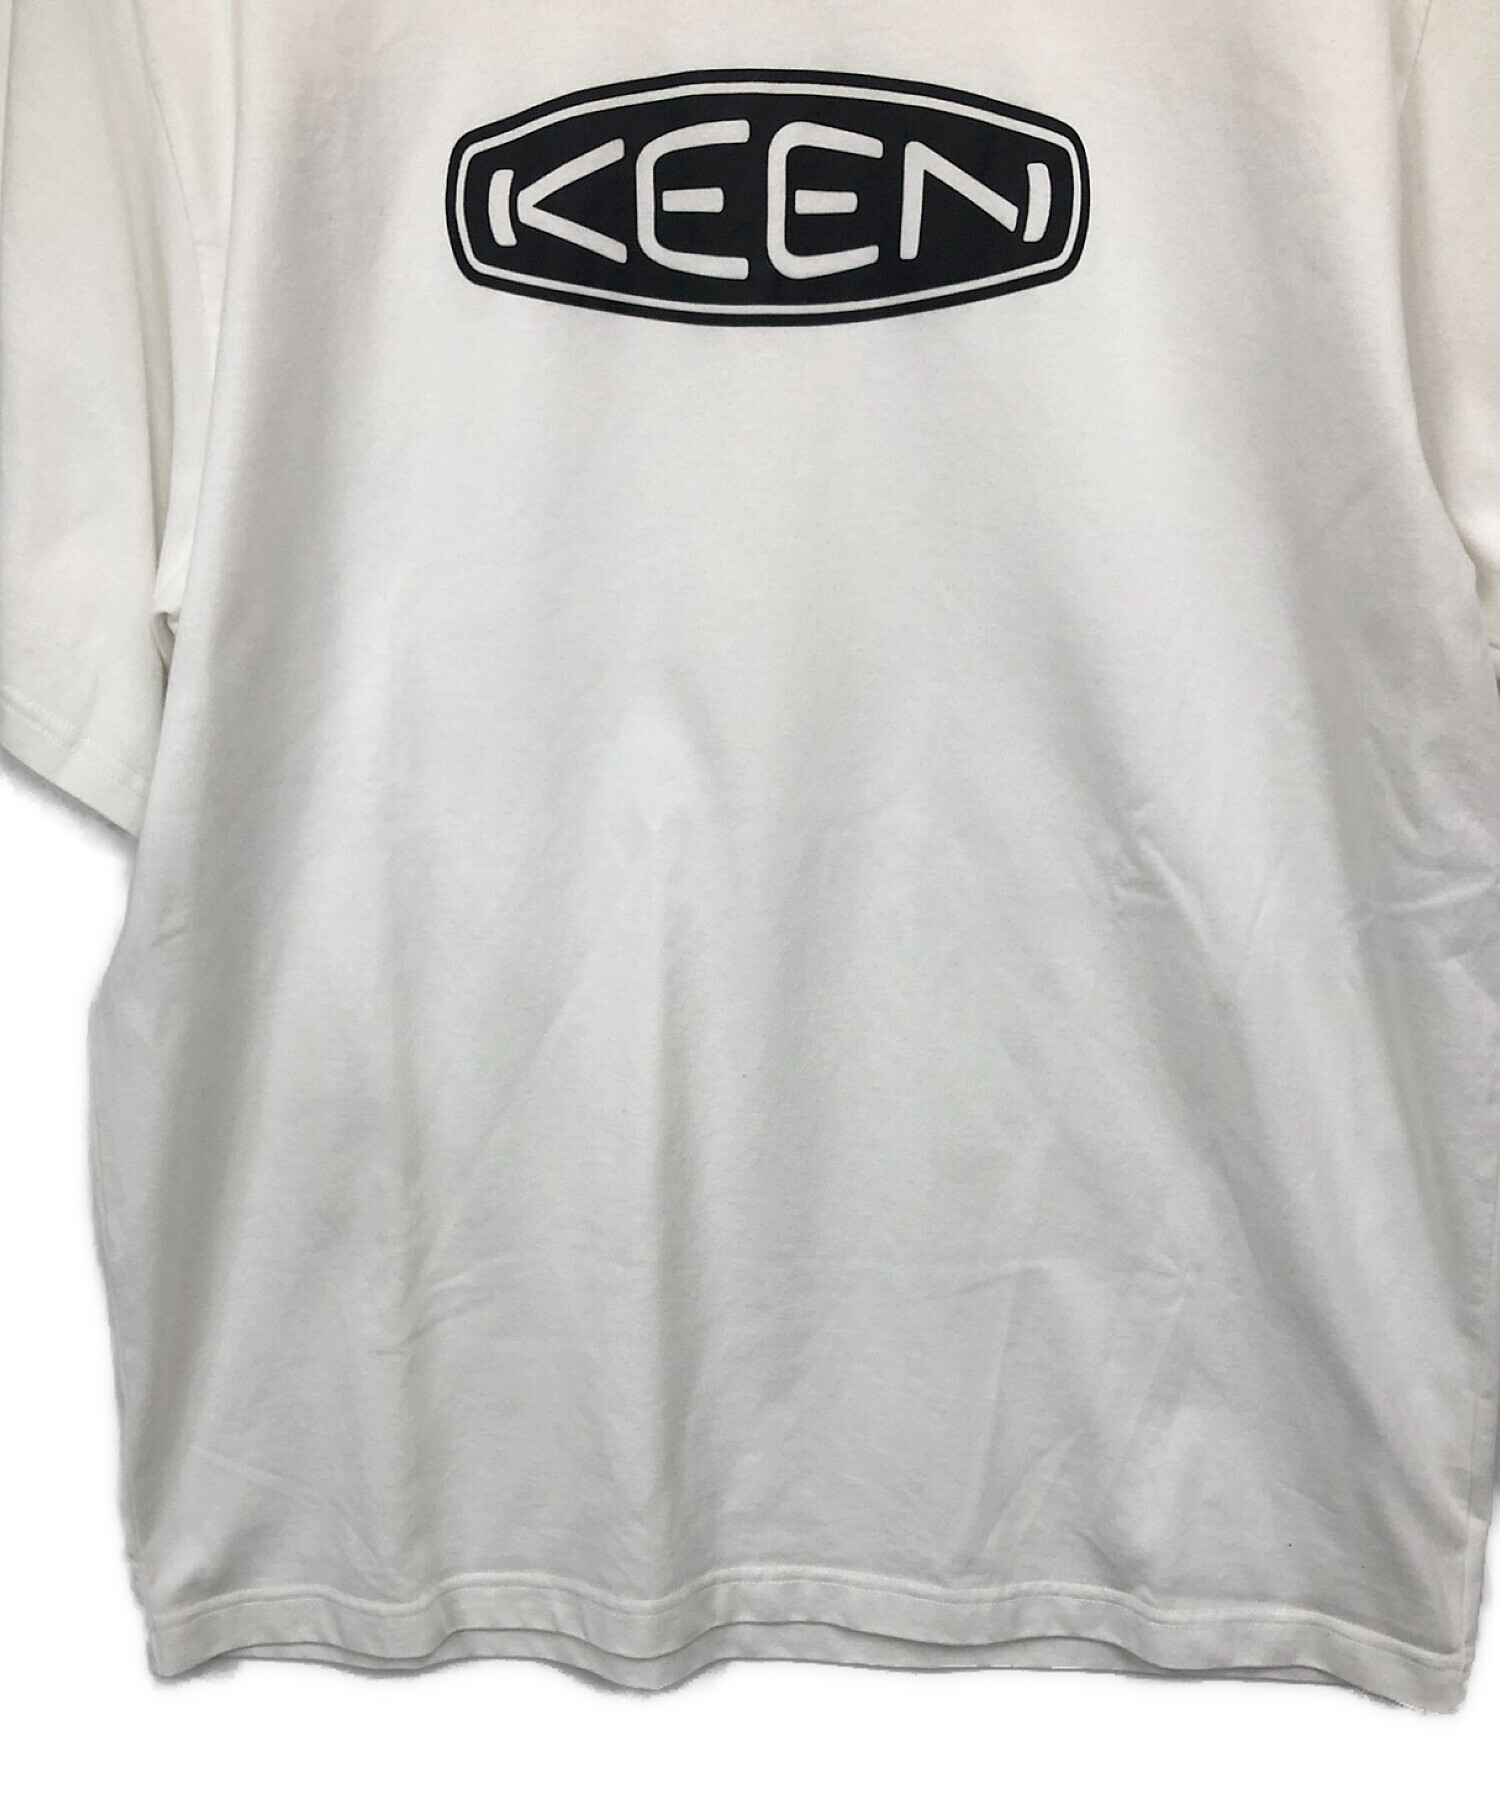 KEEN (キーン) ロゴTシャツ ホワイト サイズ:XL